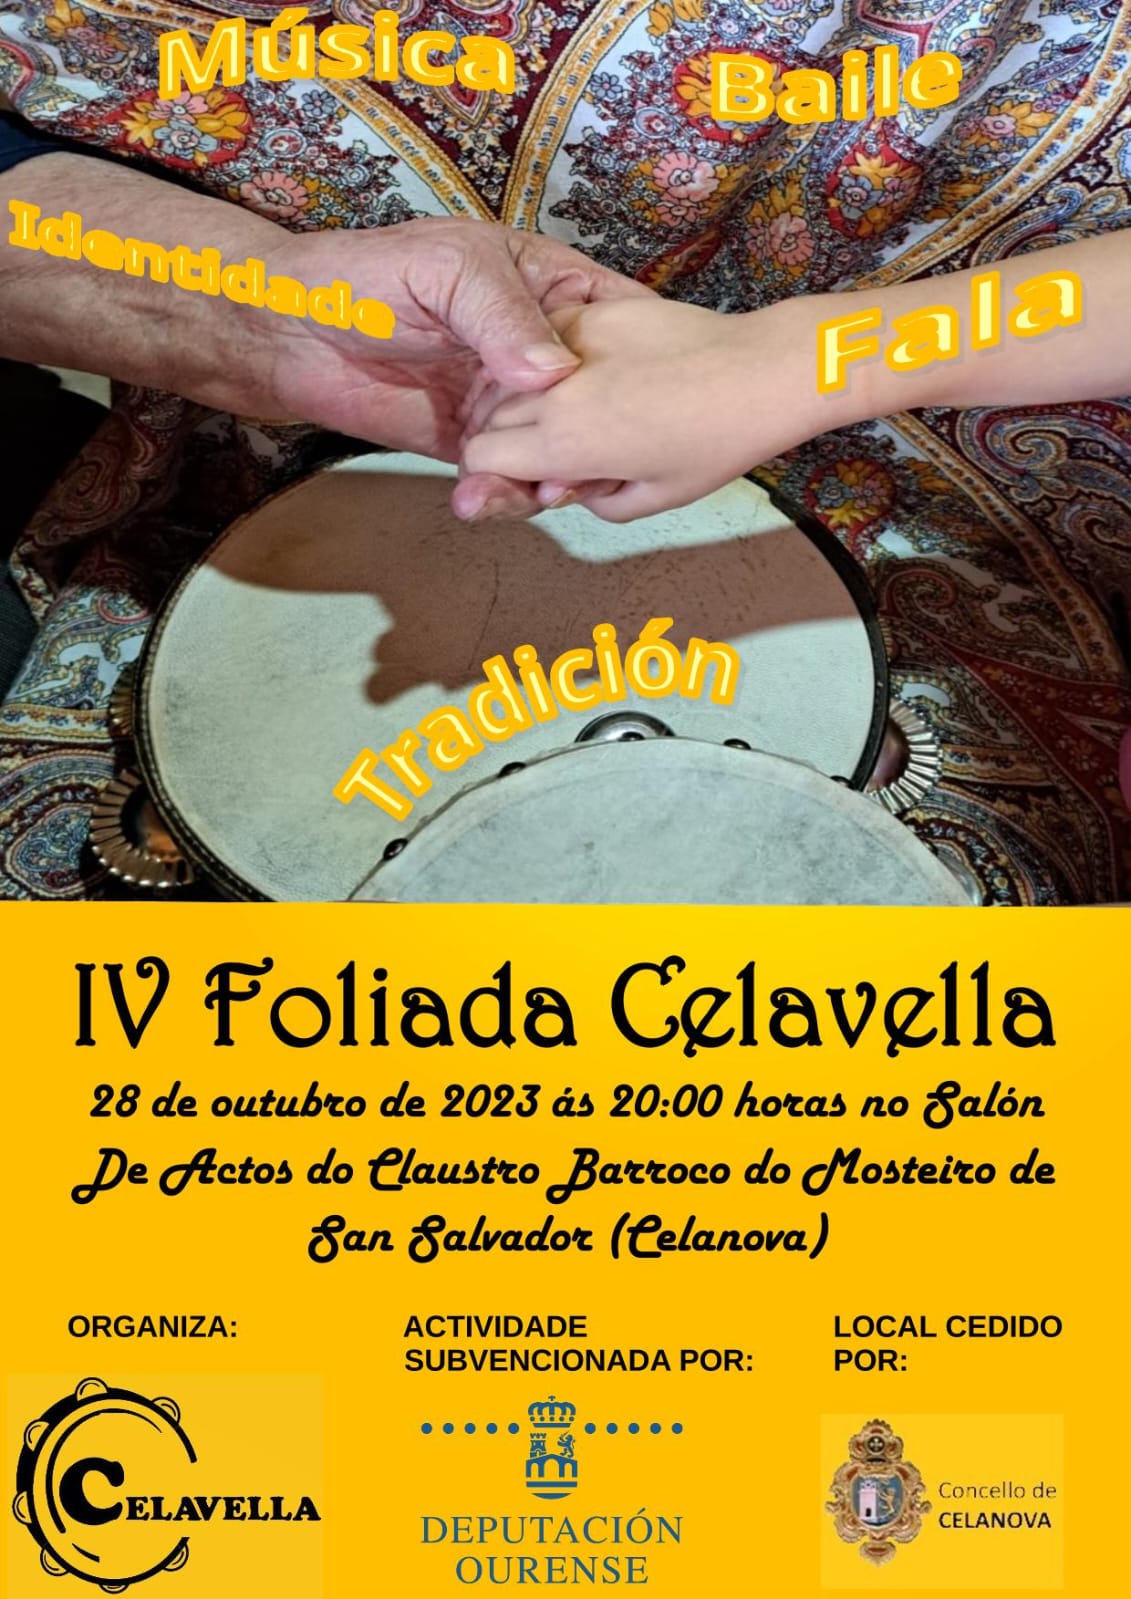 IV Foliada Celavella - 28 outubro as 20:00 Claustro Barroco do Mosteiro.